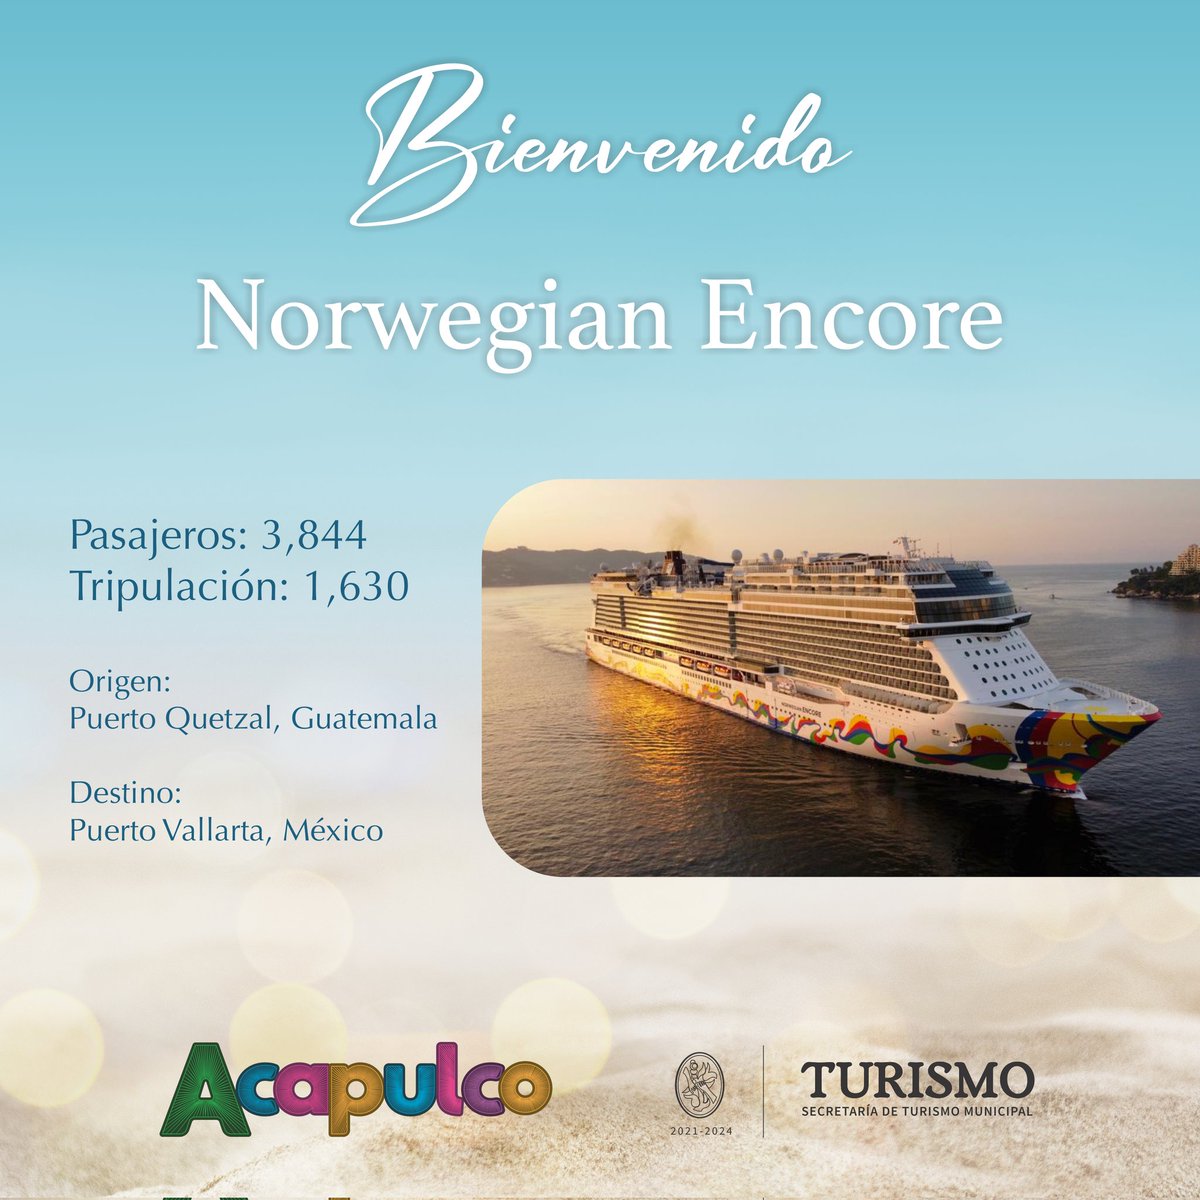 ✨¡Bienvenidos Norwegian Encore! ✨

Con el especular amanecer que abraza al puerto de Acapulco recibimos el 11° trasatlantico, operado por la naviera @CruiseNorwegian  con 3 mil 844 pasajeros y mil 630 tripulantes. 🙌🏼🧭🛳️
#AcapulcoLoTieneTodo 
#TurismoDeCruceros 
@AbelinaLopezR